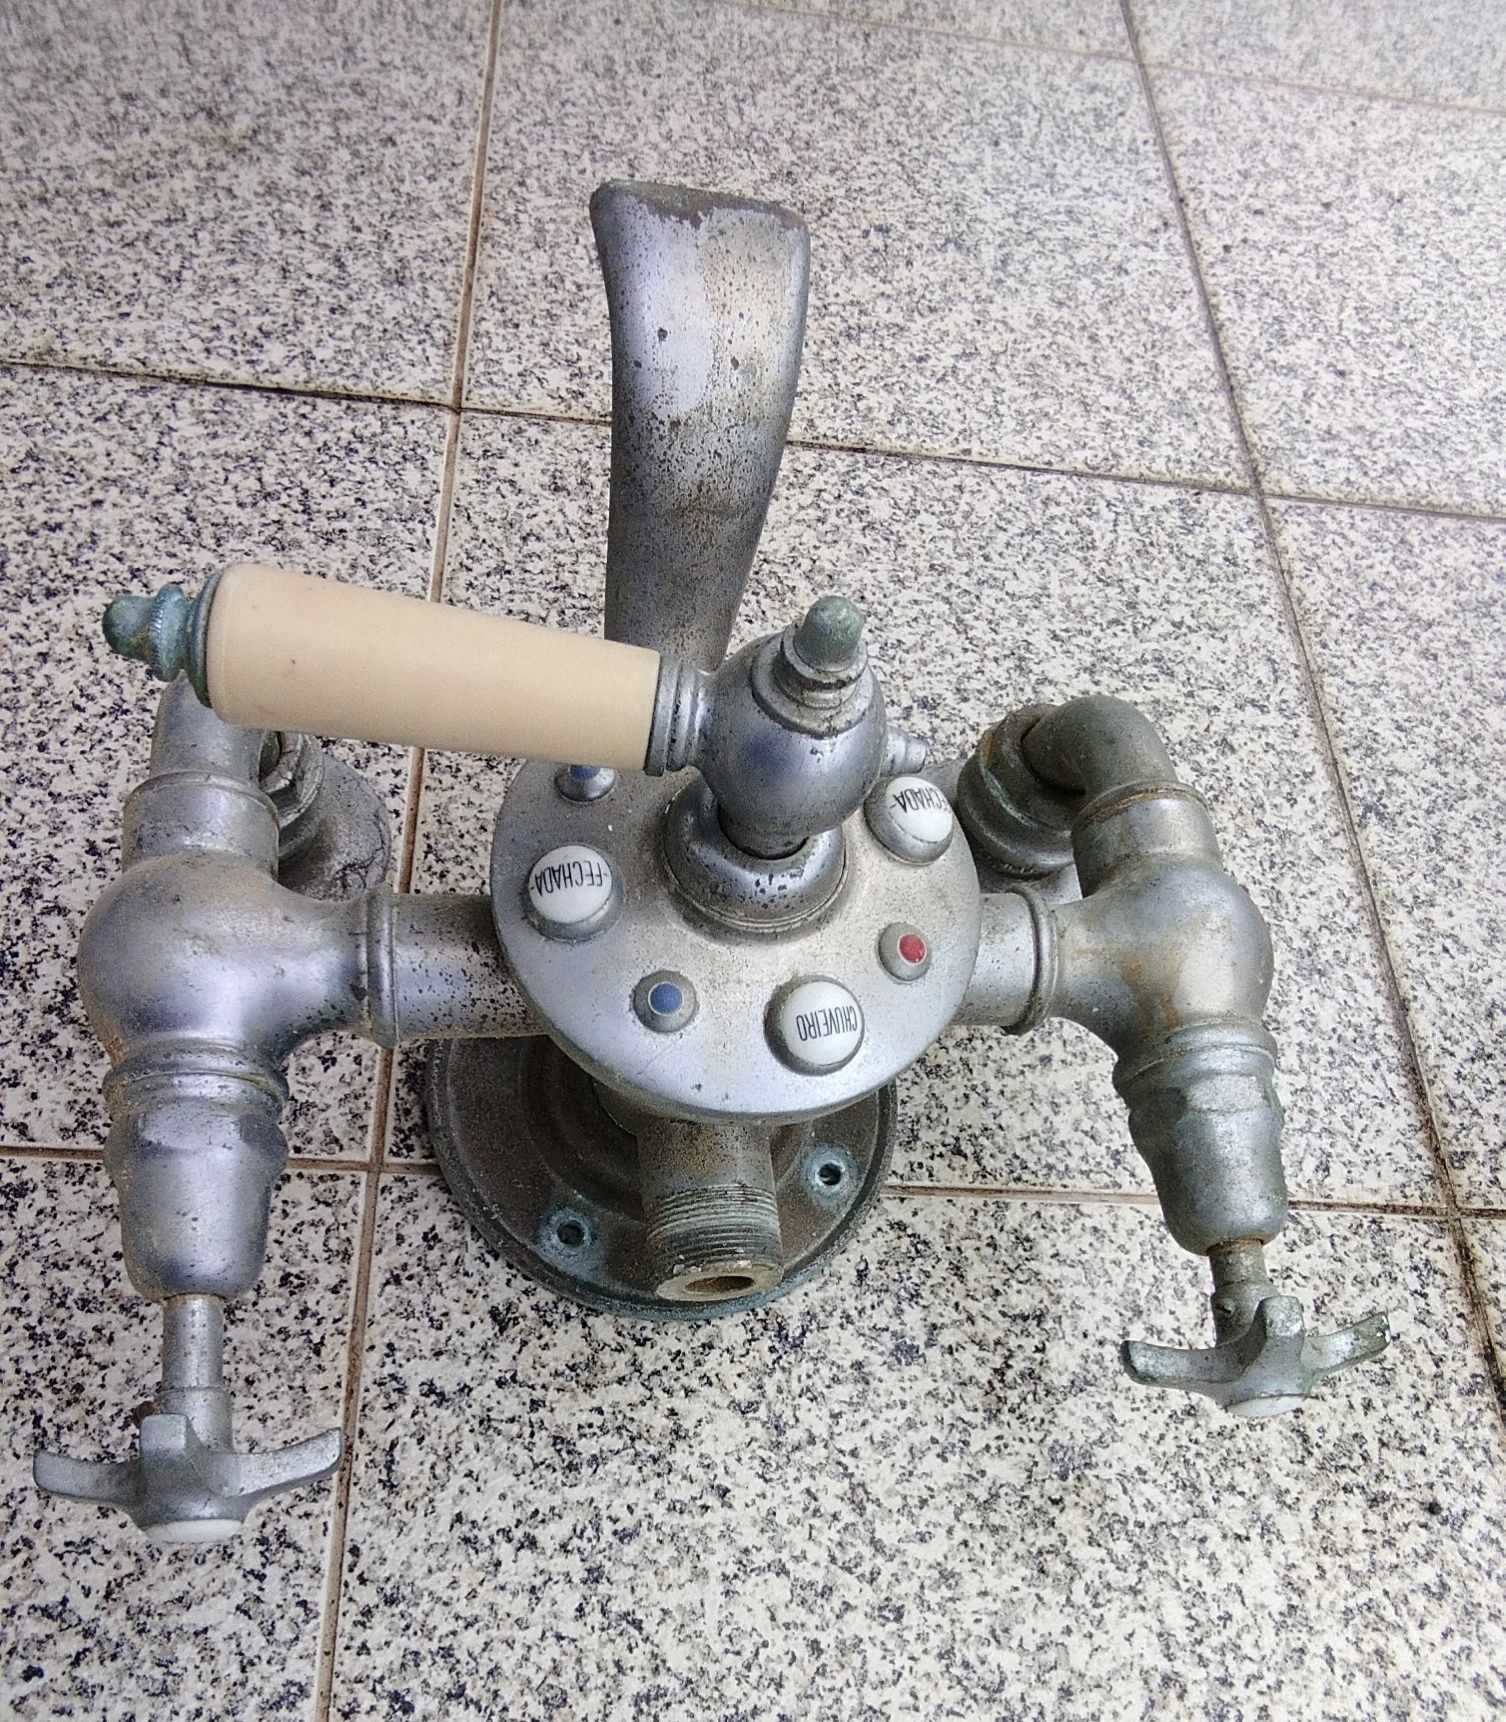 Torneira misturadora de banheira/chuveiro anos 40